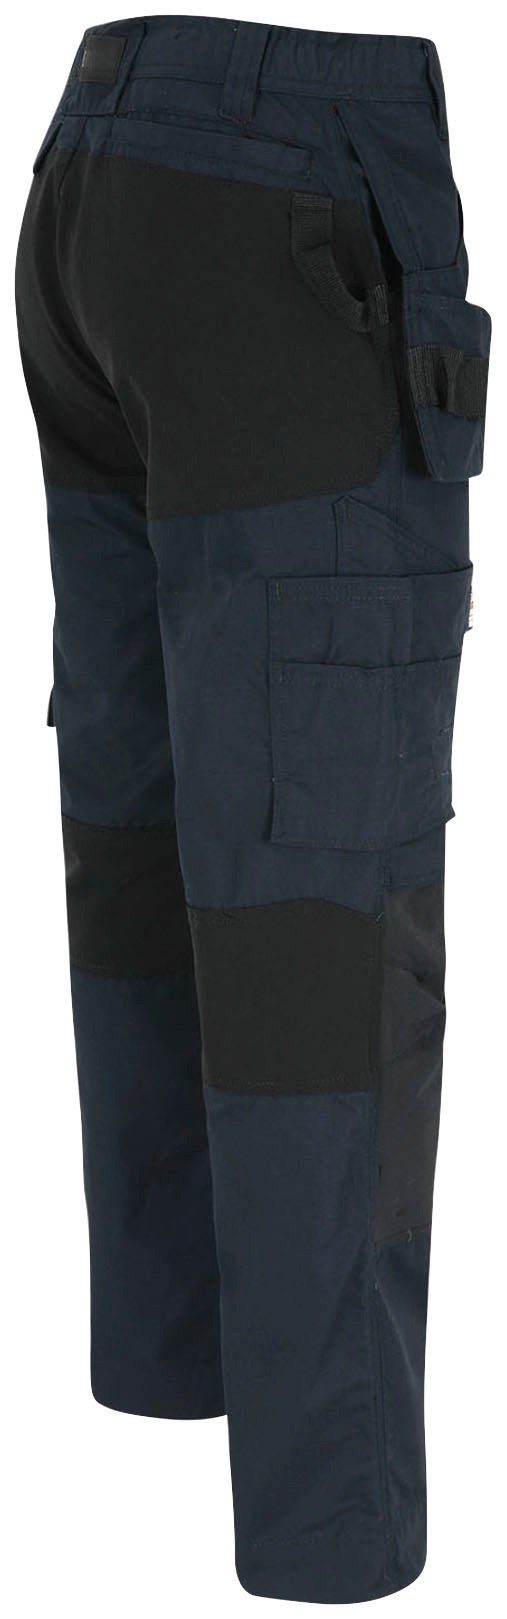 festen 2 marine Herock 4-Wege-Stretch-Teilen Hose Spector Multi-Pocket-Hose und mit Arbeitshose Nageltaschen